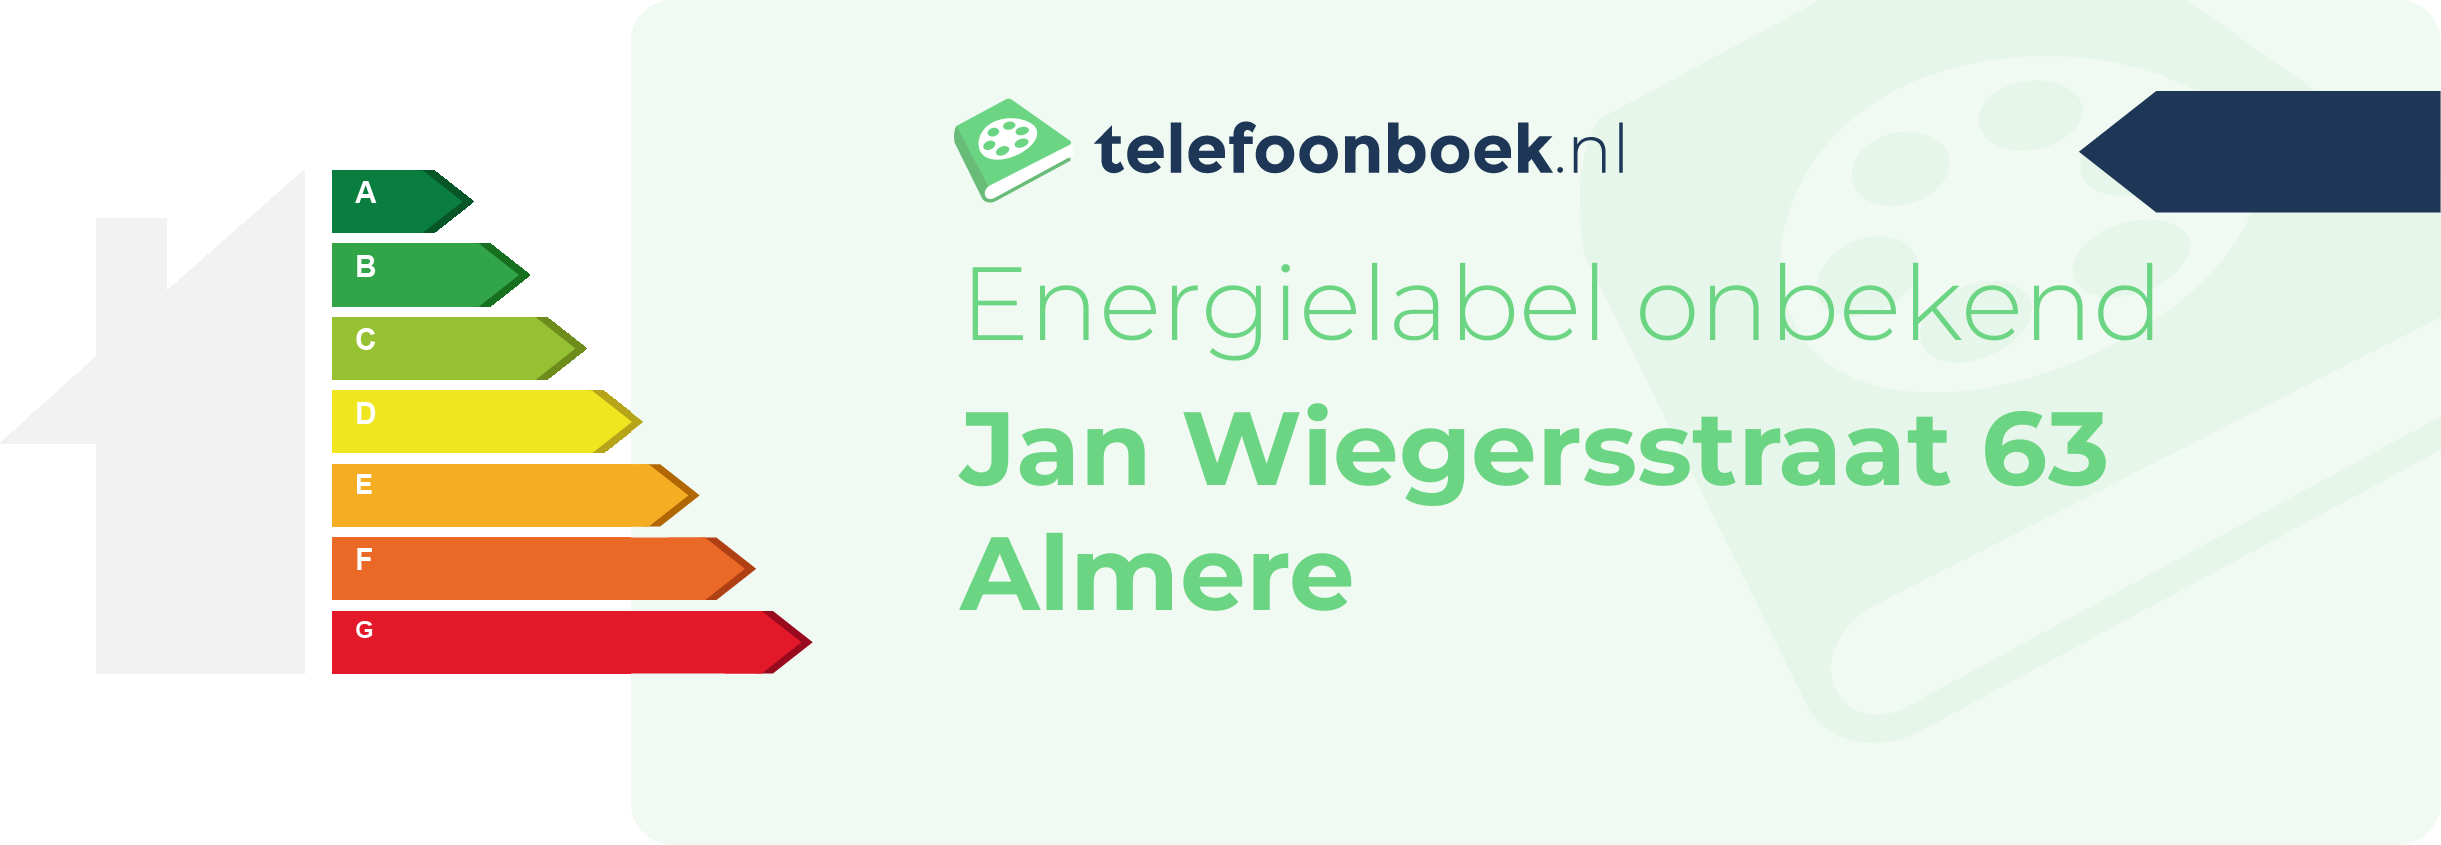 Energielabel Jan Wiegersstraat 63 Almere